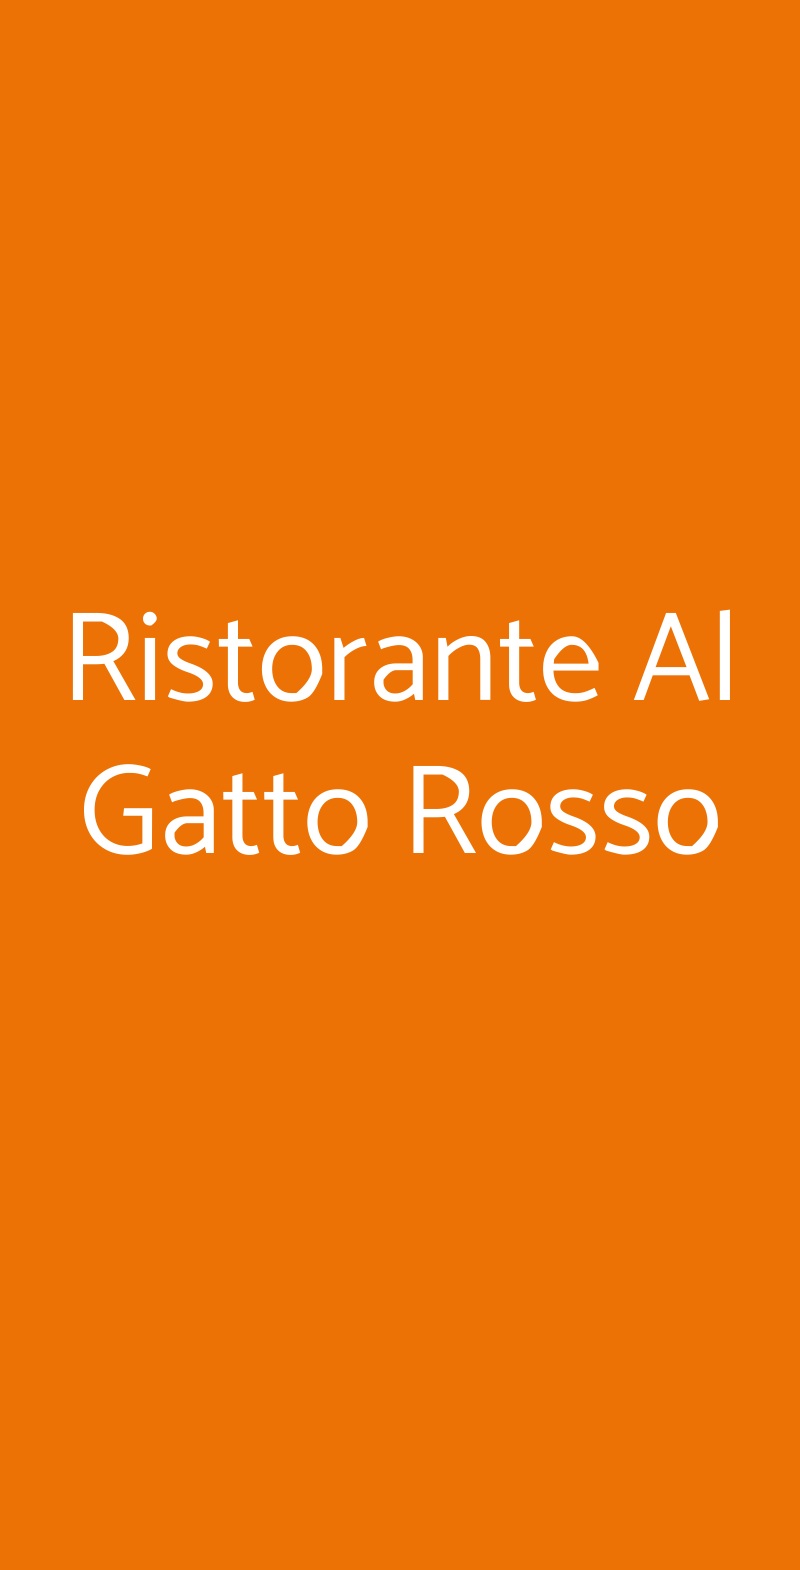 Ristorante Al Gatto Rosso Taranto menù 1 pagina